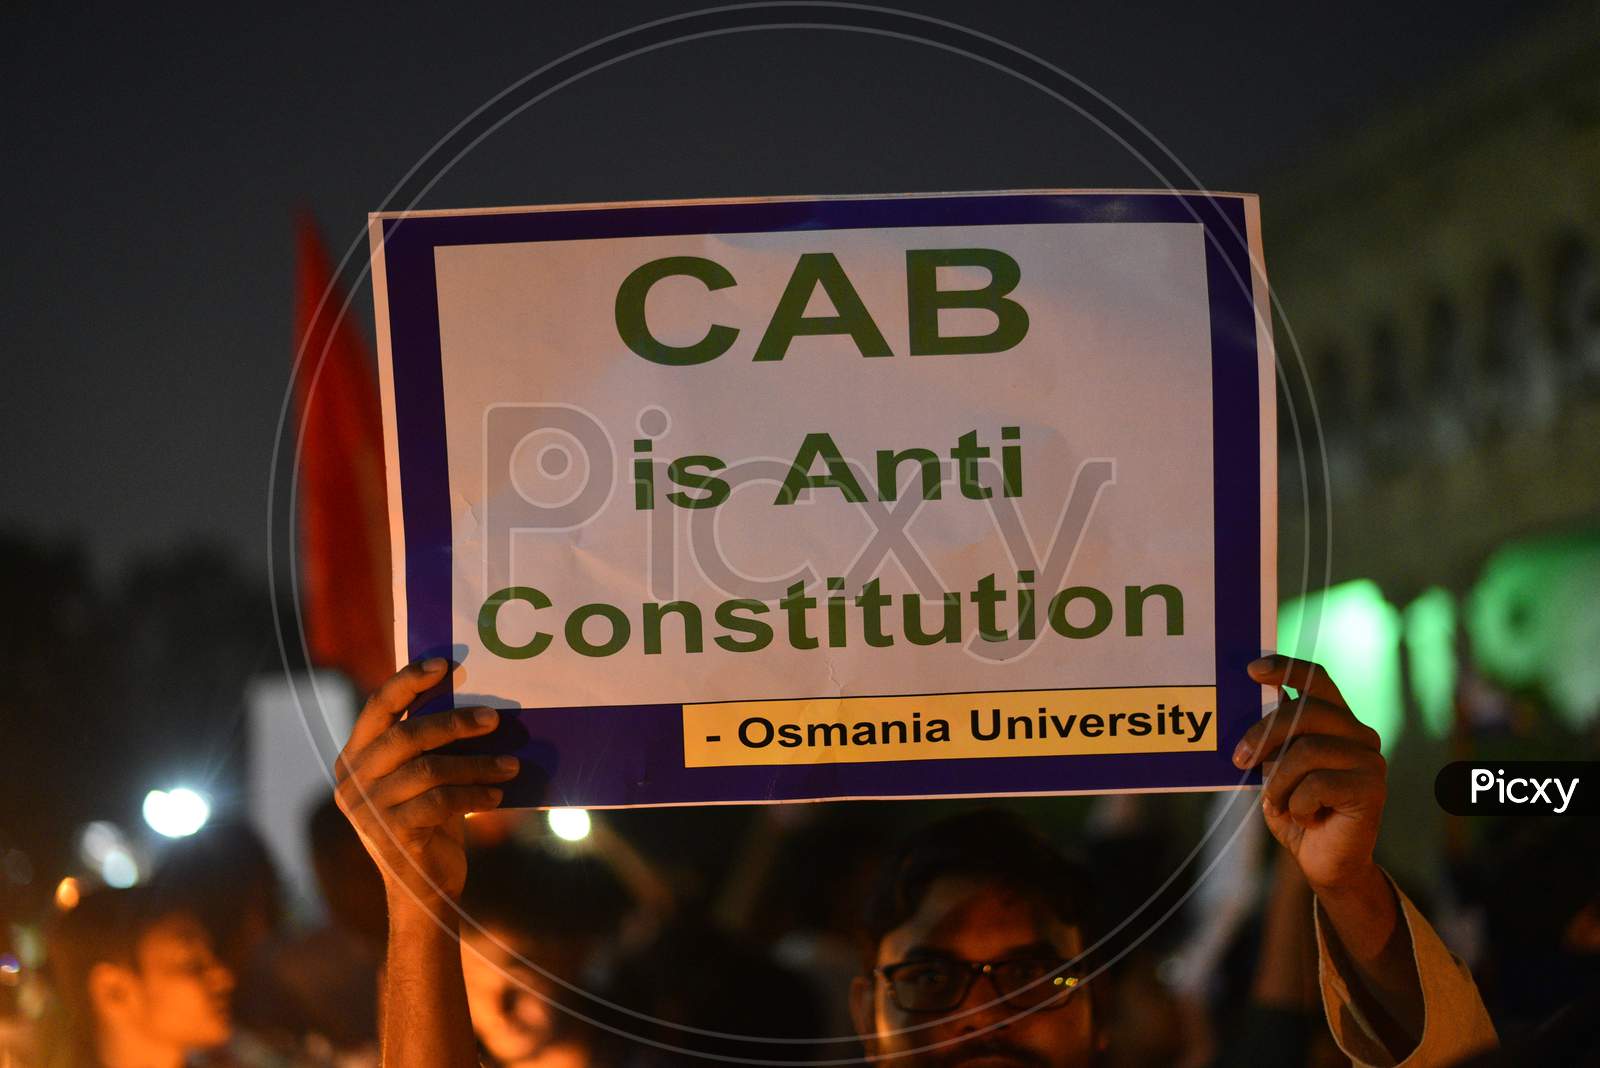 CAB is Anti Constitutional